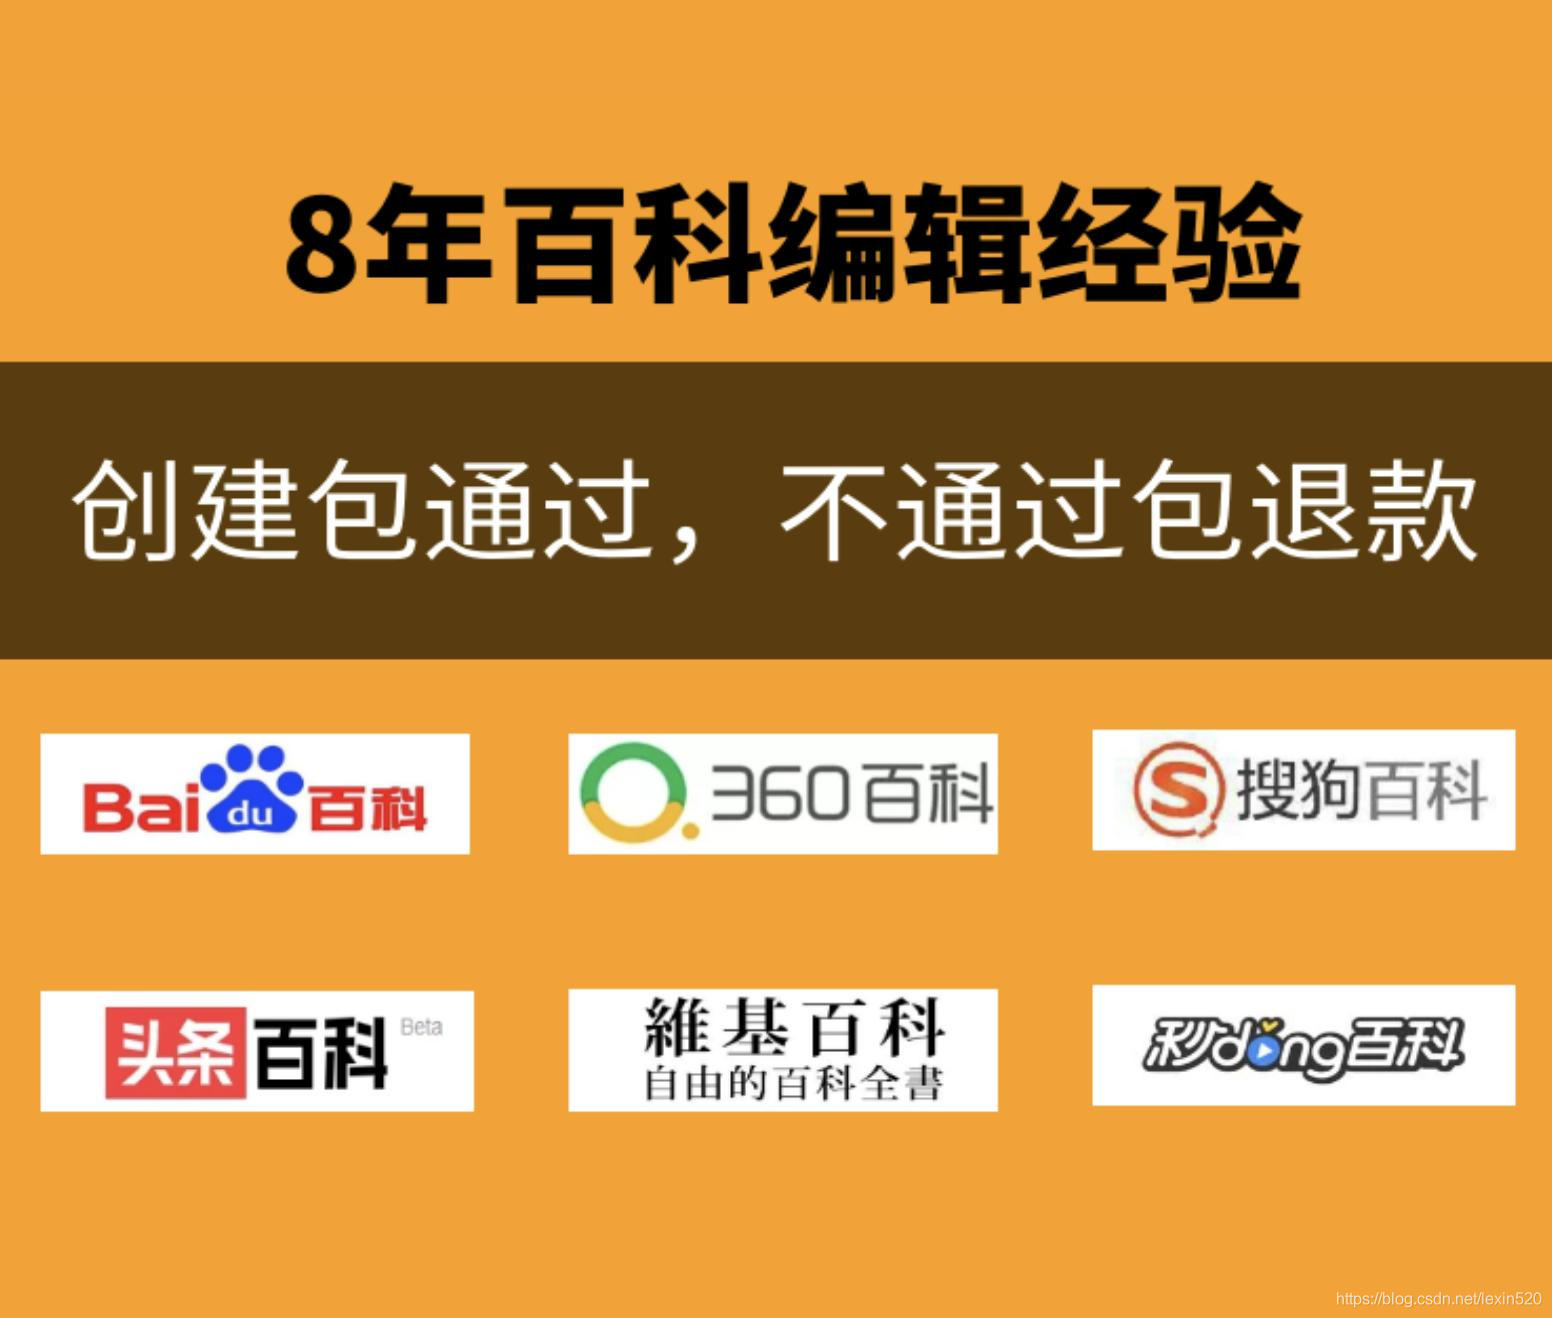 百度中文域名_中文域名在百度能搜到吗_如何让百度收录中文域名网站?